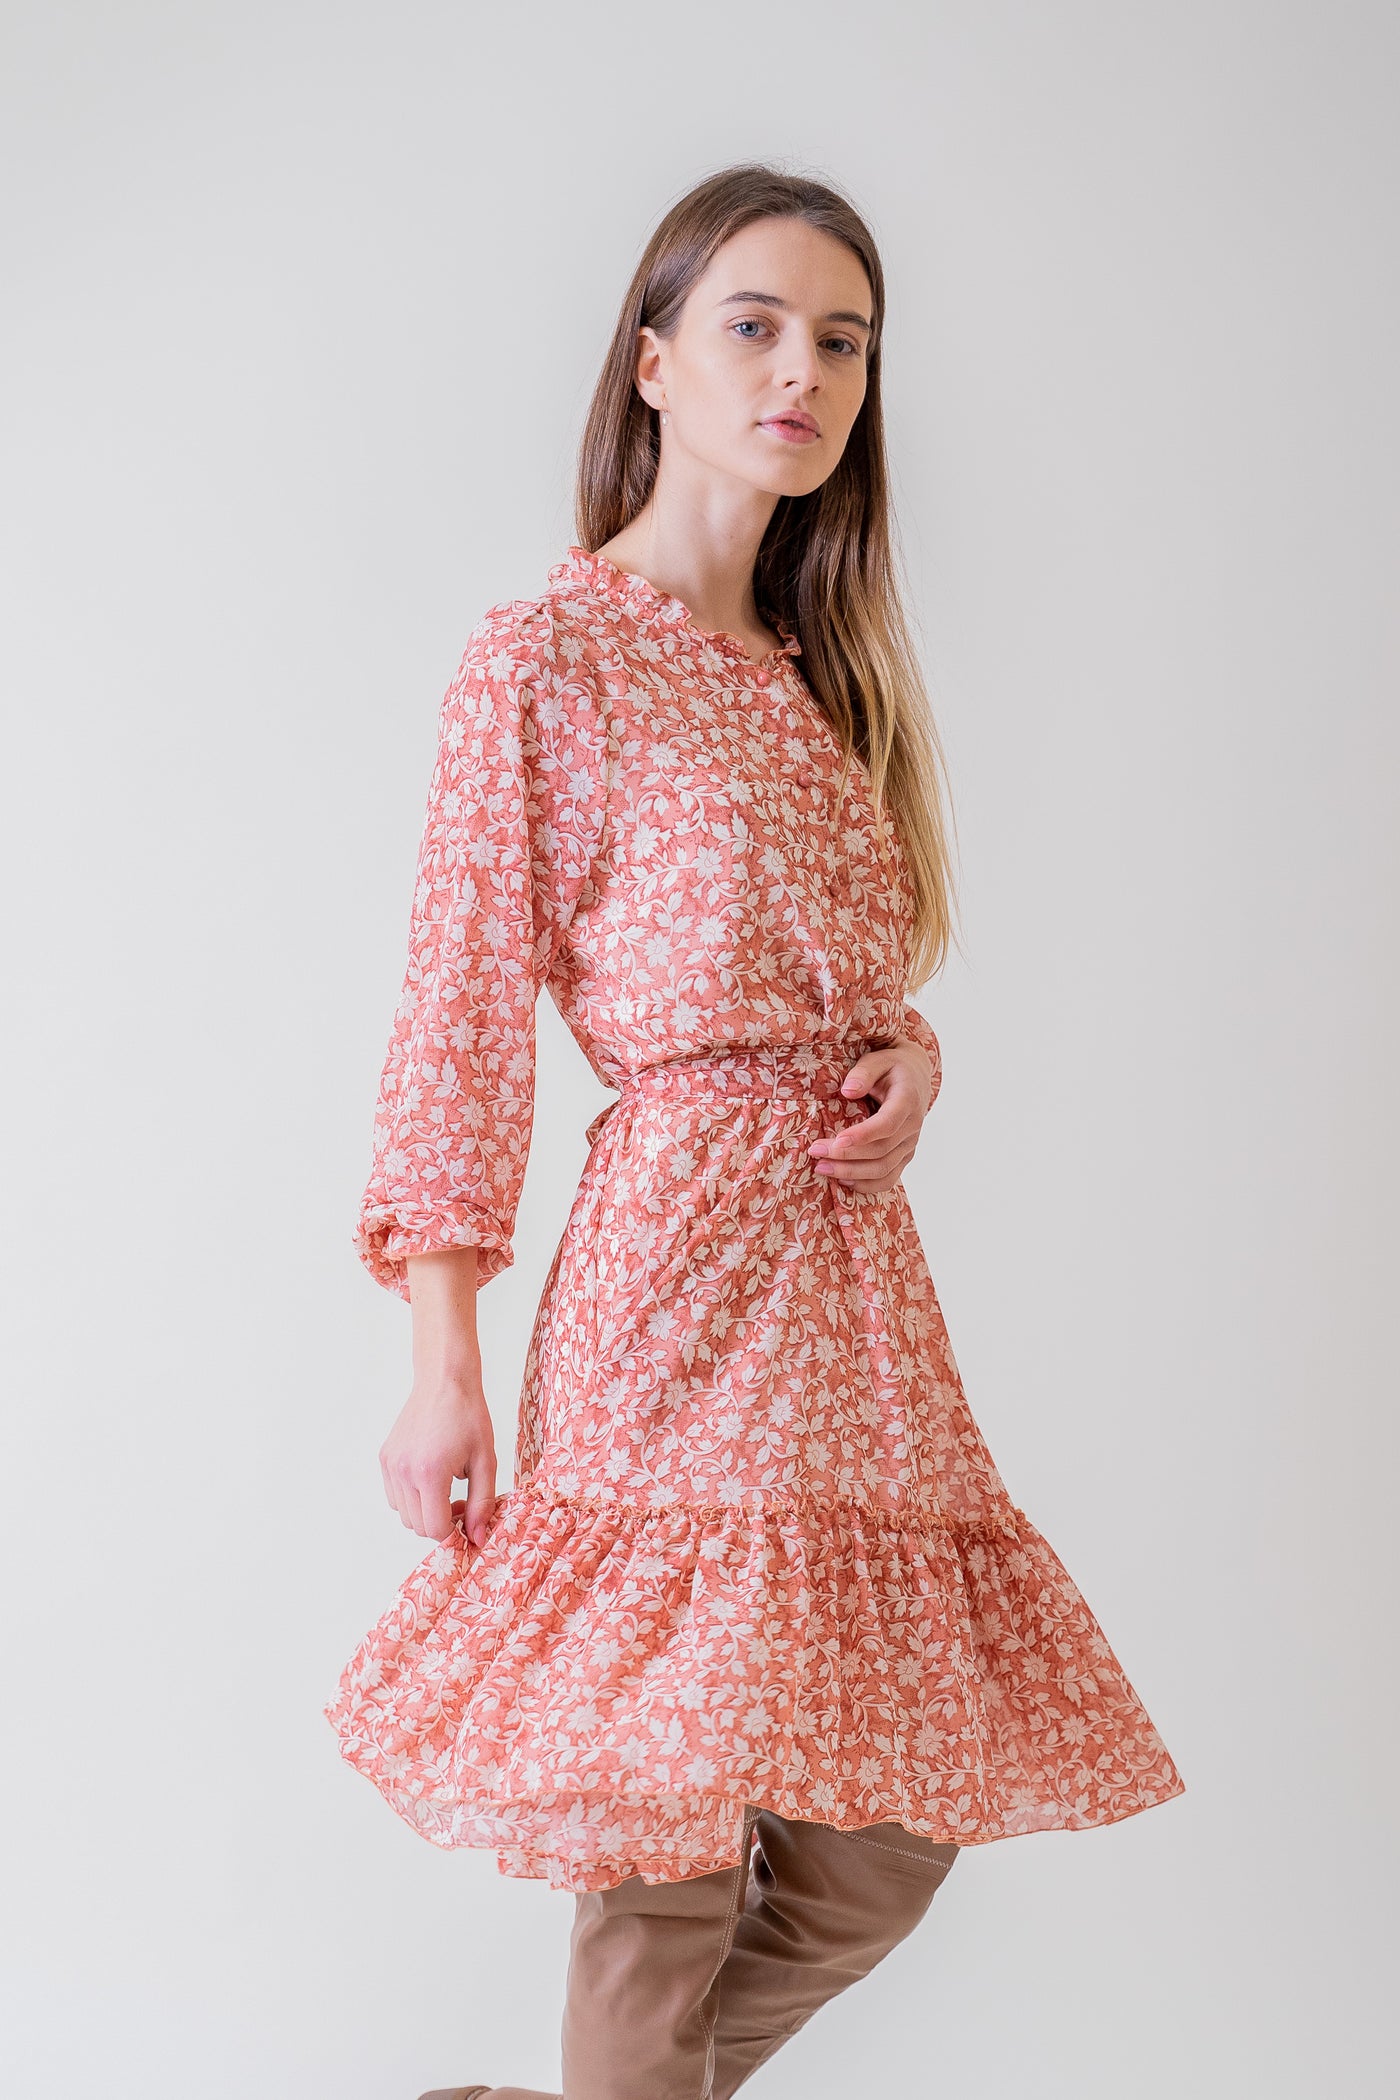 Ružové šaty s malou potlačou - Šaty